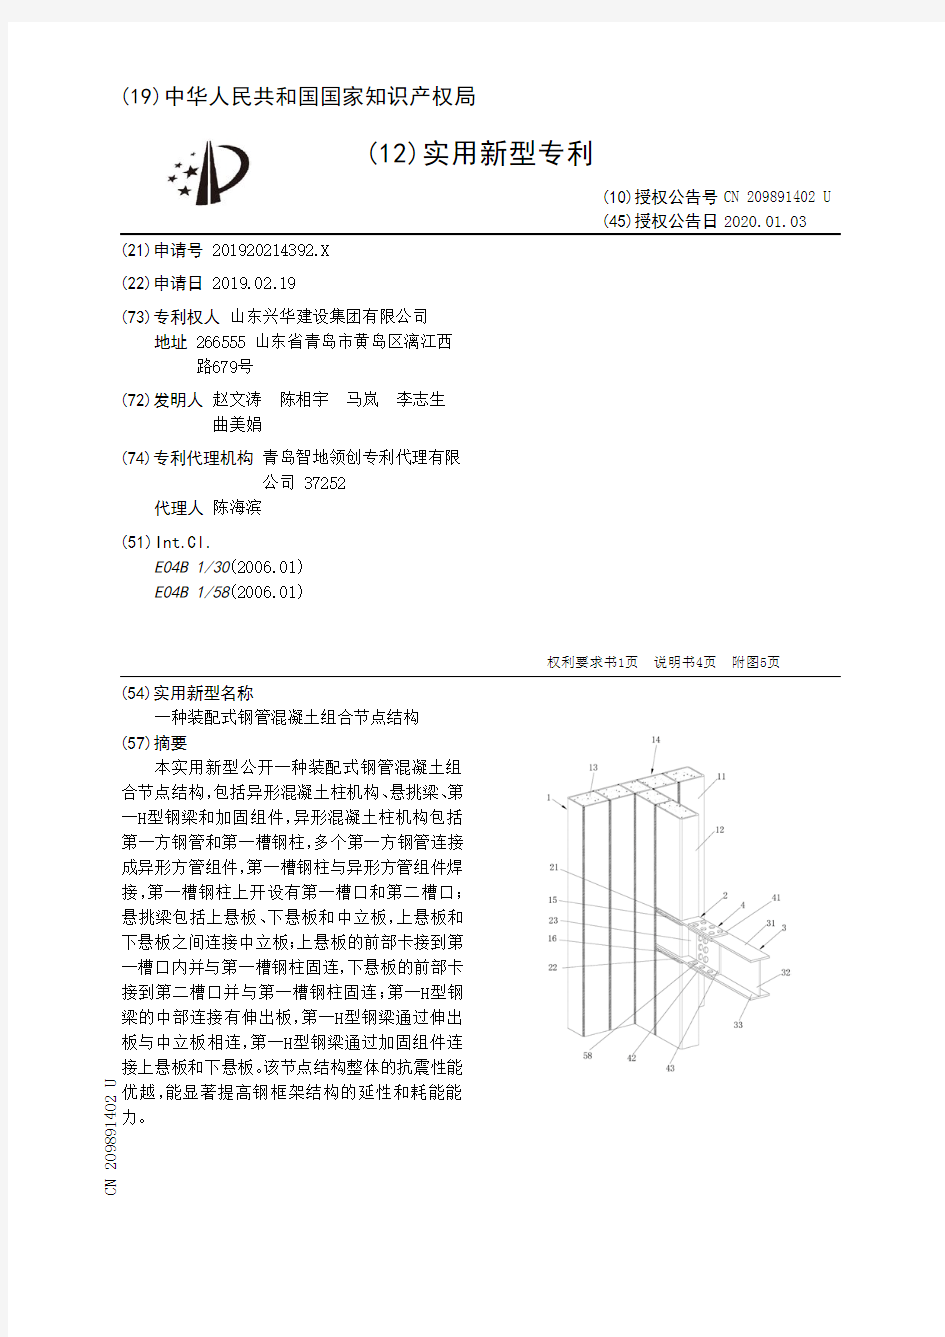 【CN209891402U】一种装配式钢管混凝土组合节点结构【专利】